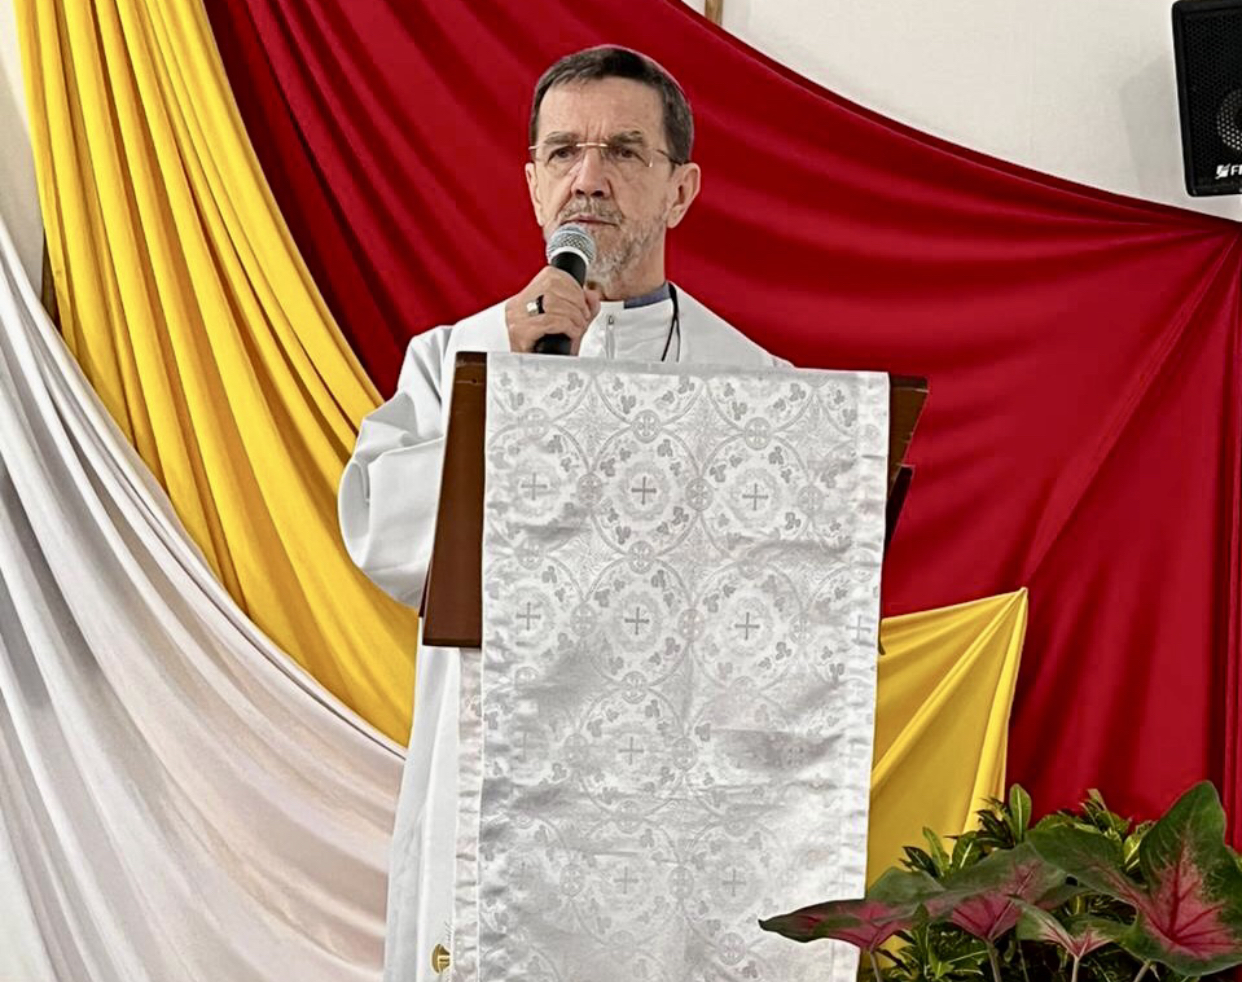 Bispo de Cachoeiro celebra no Amazonas 